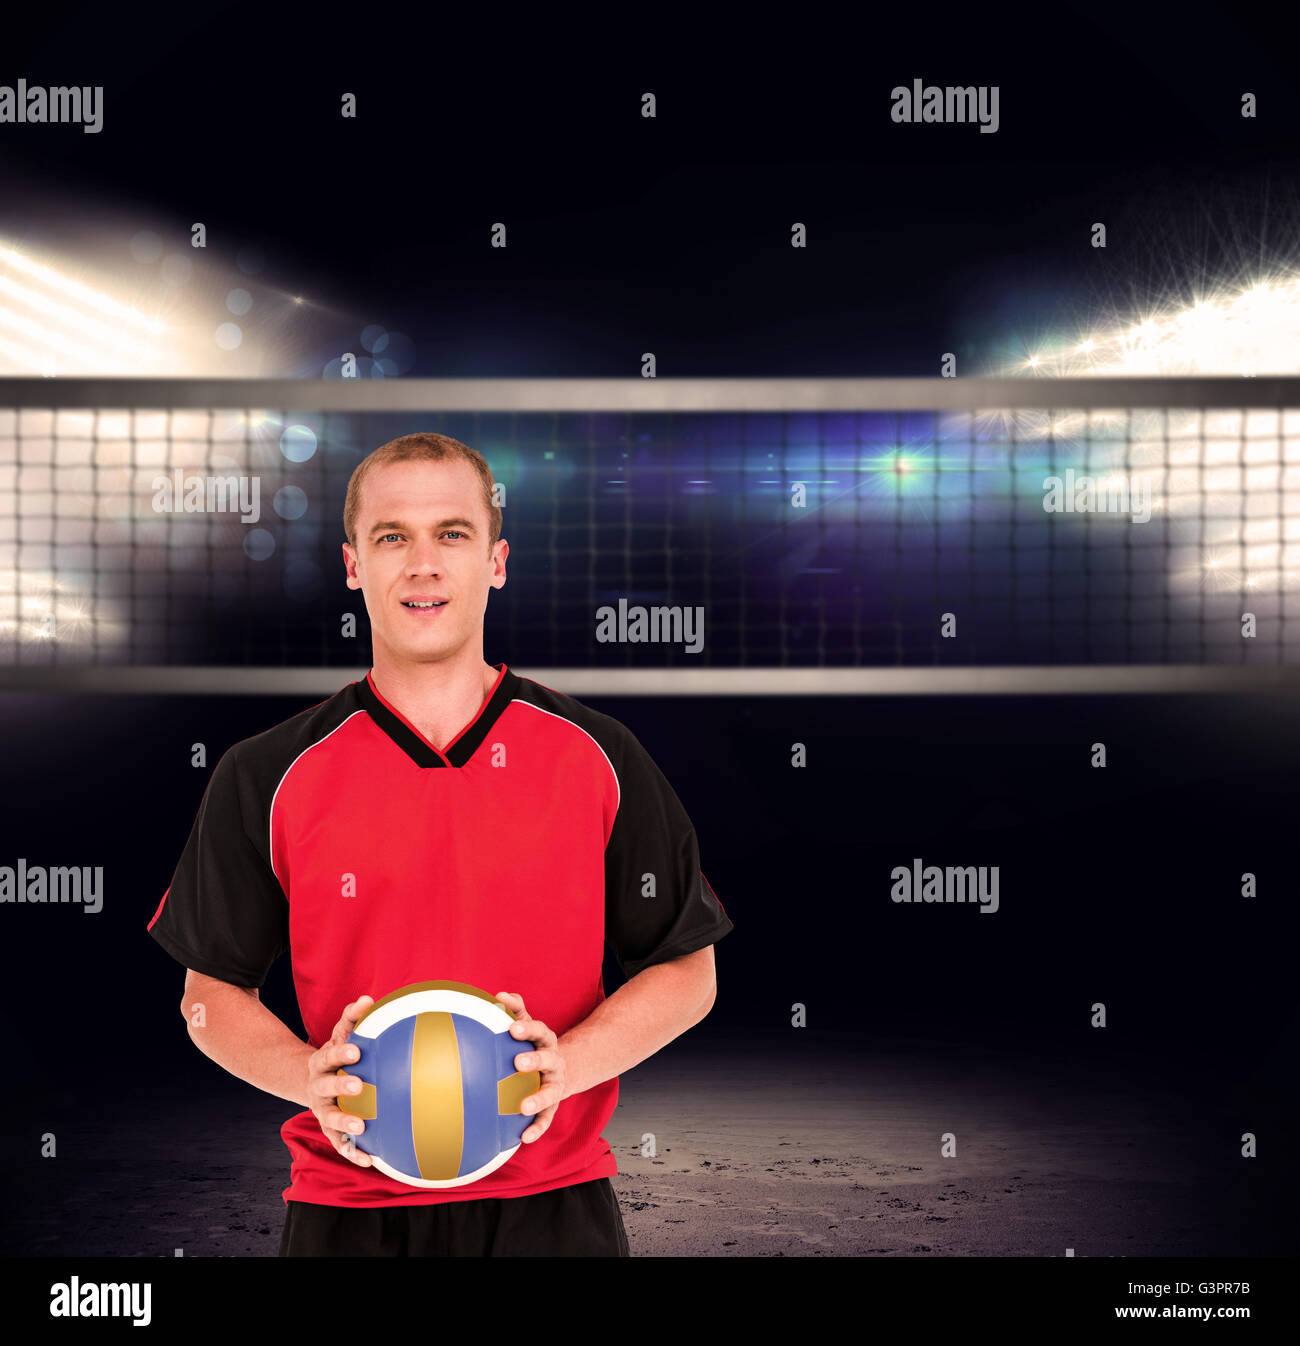 Immagine composita di sportivo tenendo un pallavolo Foto Stock